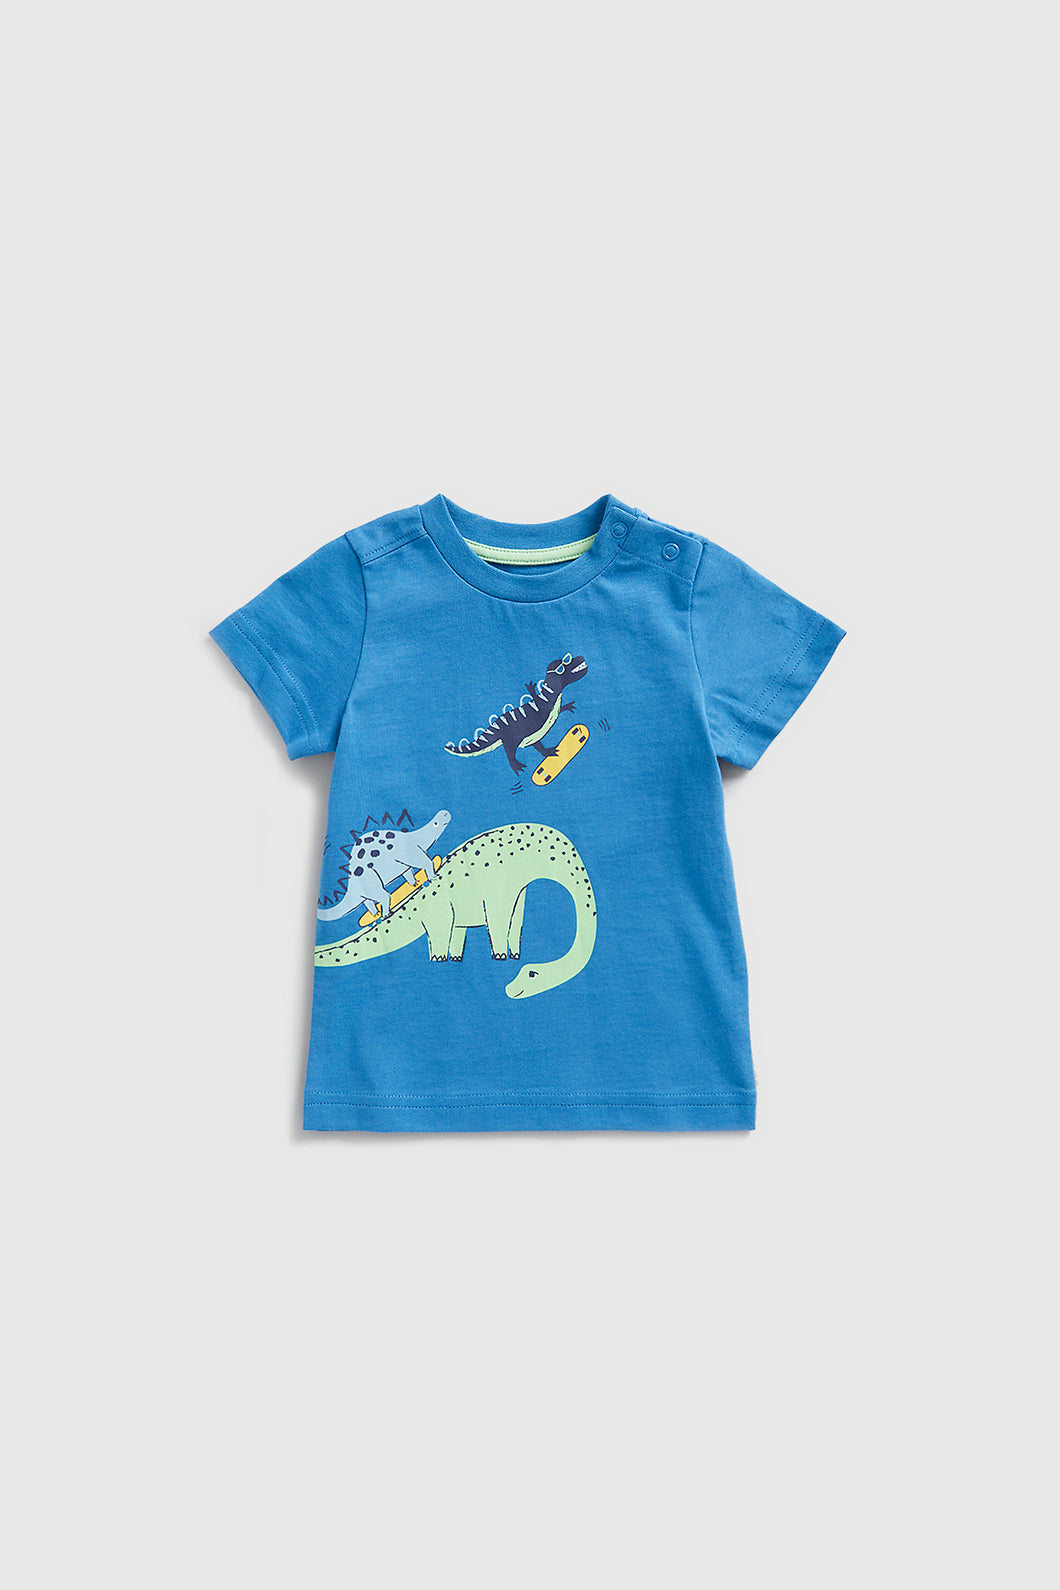 Mothercare Dinosaur Skate T-Shirt